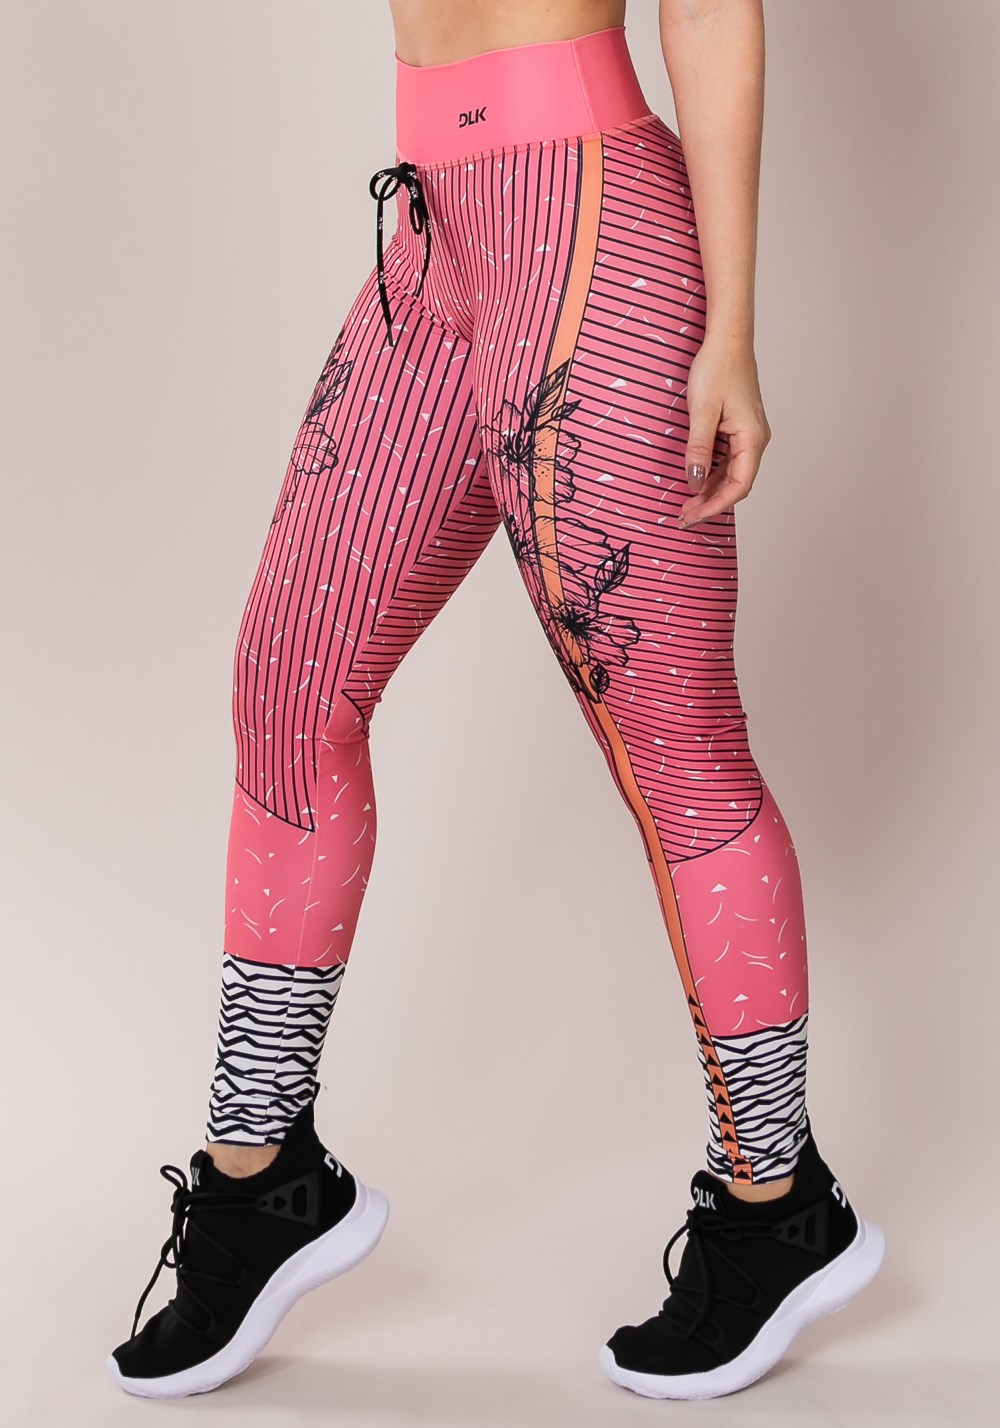 Calça legging printed com cadarço colorida